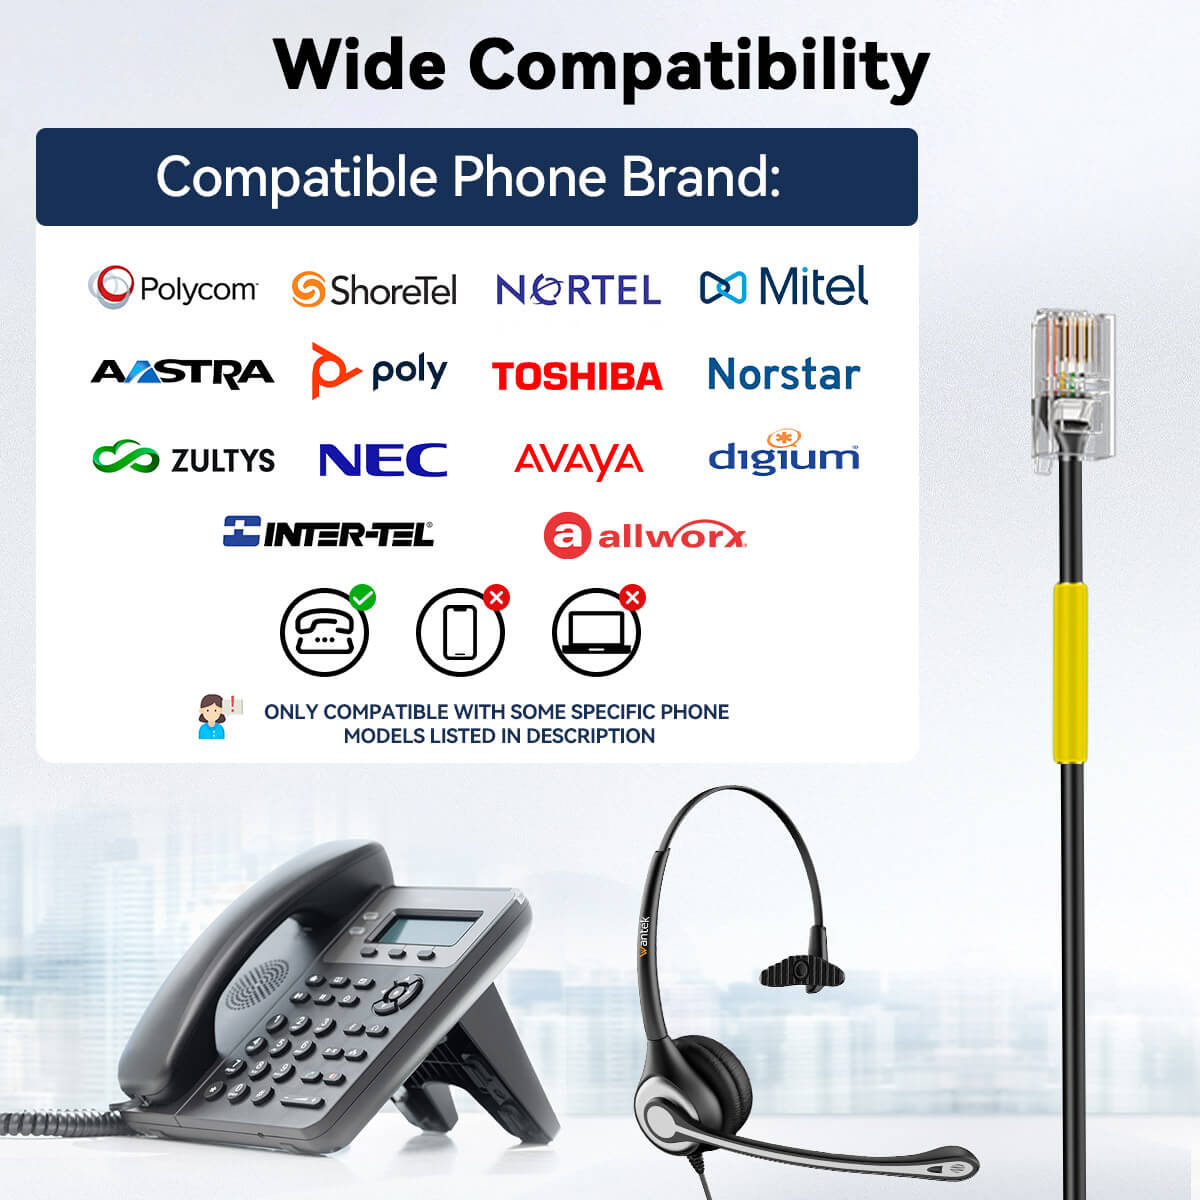 Wantek® h600 RJ9【RJ4】 headst for landline phones - iwantekWantek® h600 RJ9【RJ4】 headst for landline phones